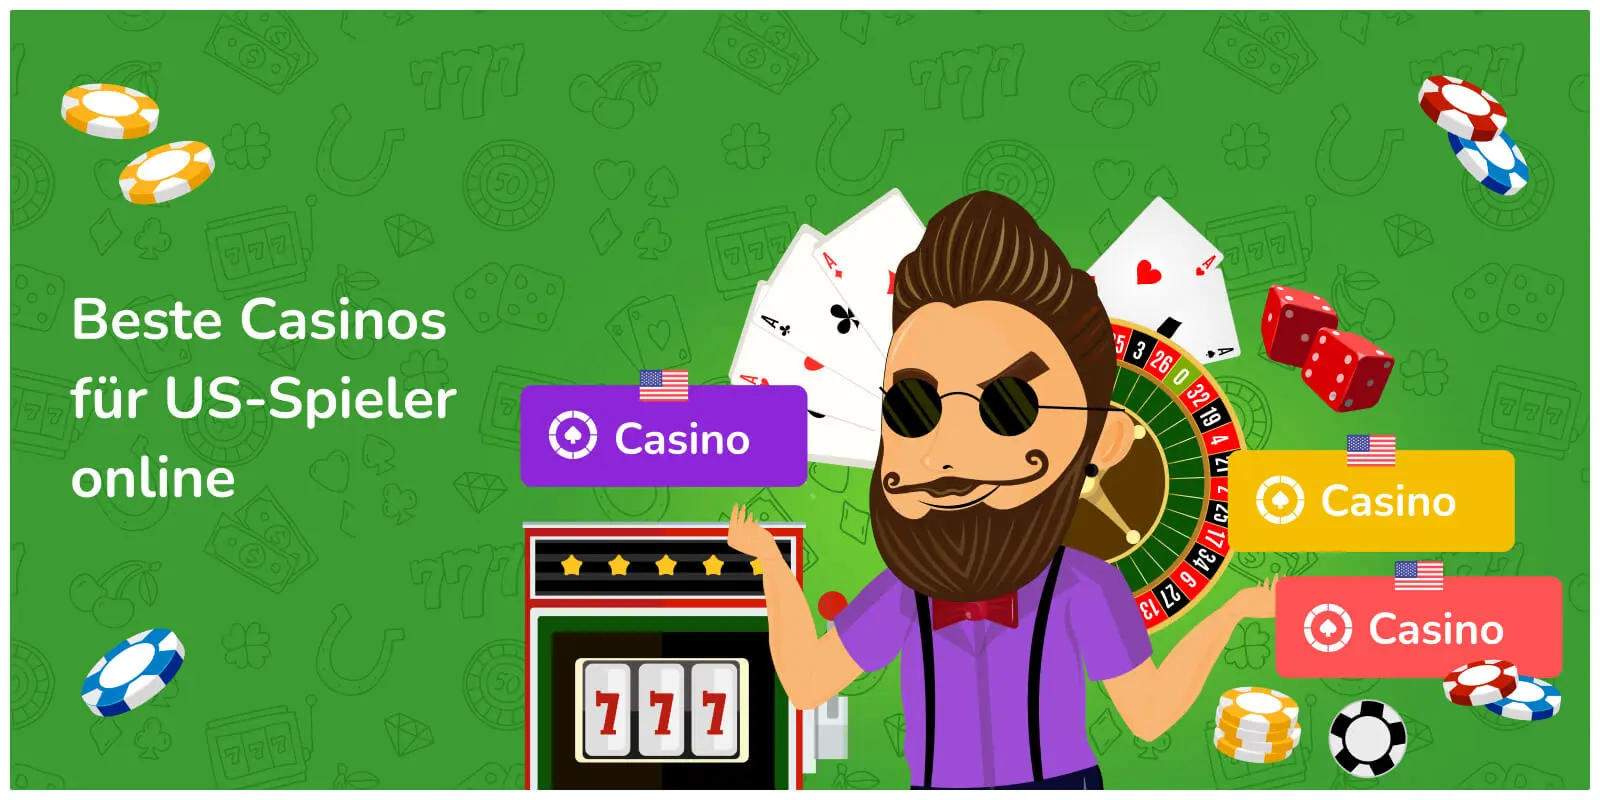 Beste Casinos für US-Spieler online